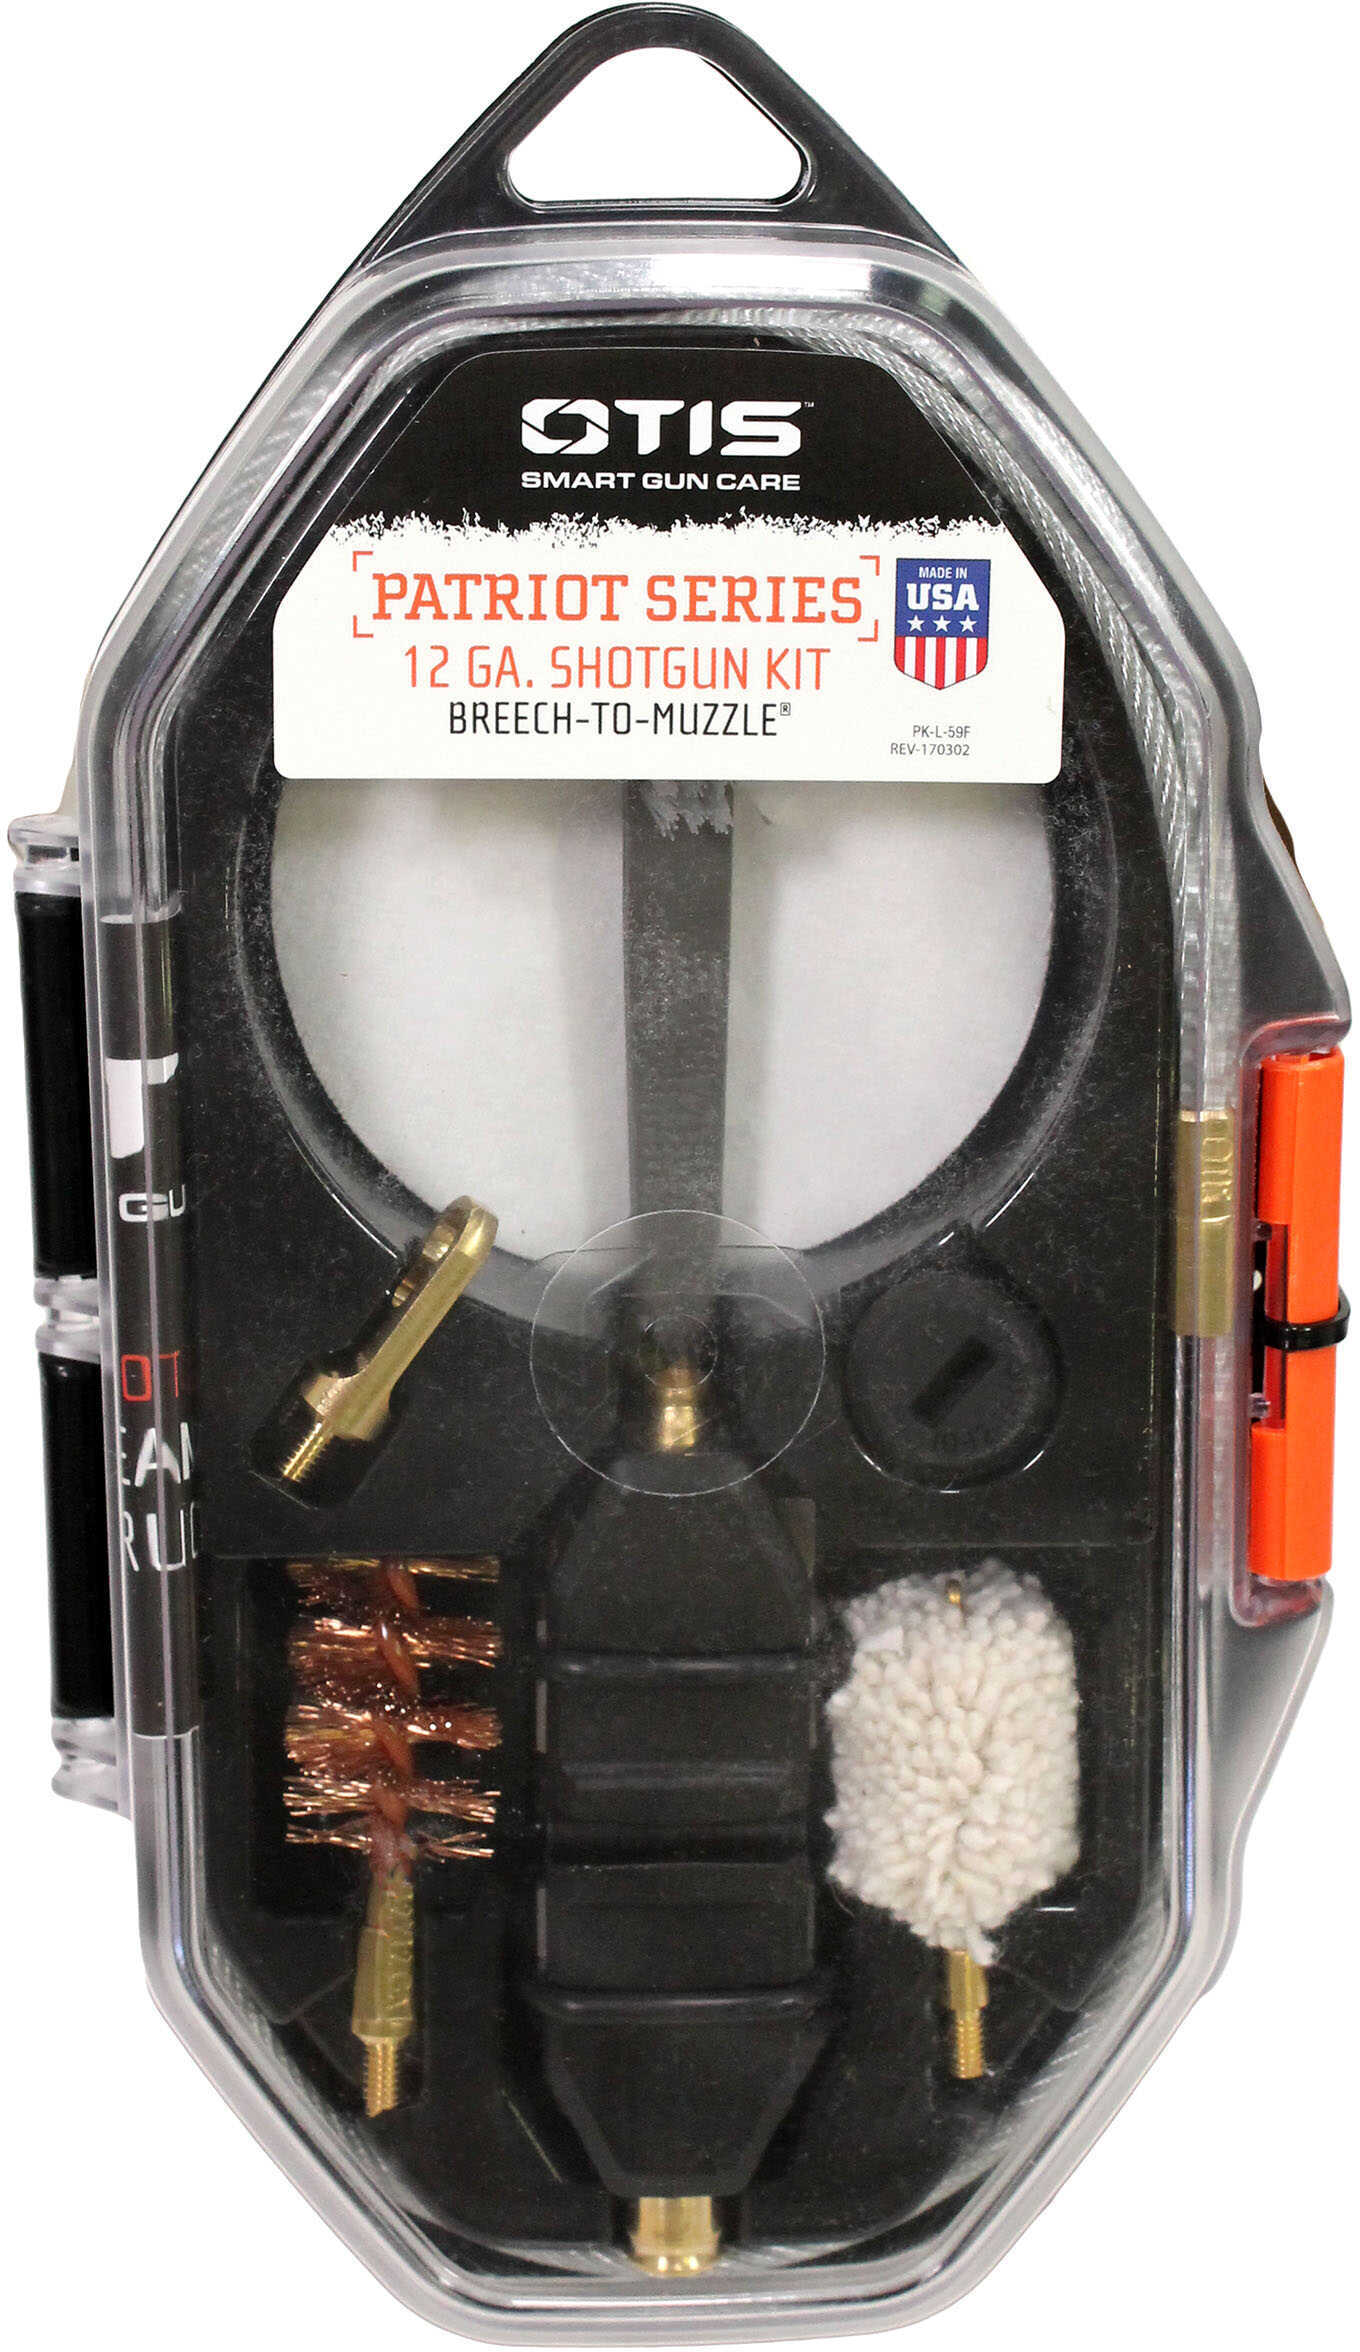 Otis 12 Ga. Patriot Series Shotgun Cleaning Kit